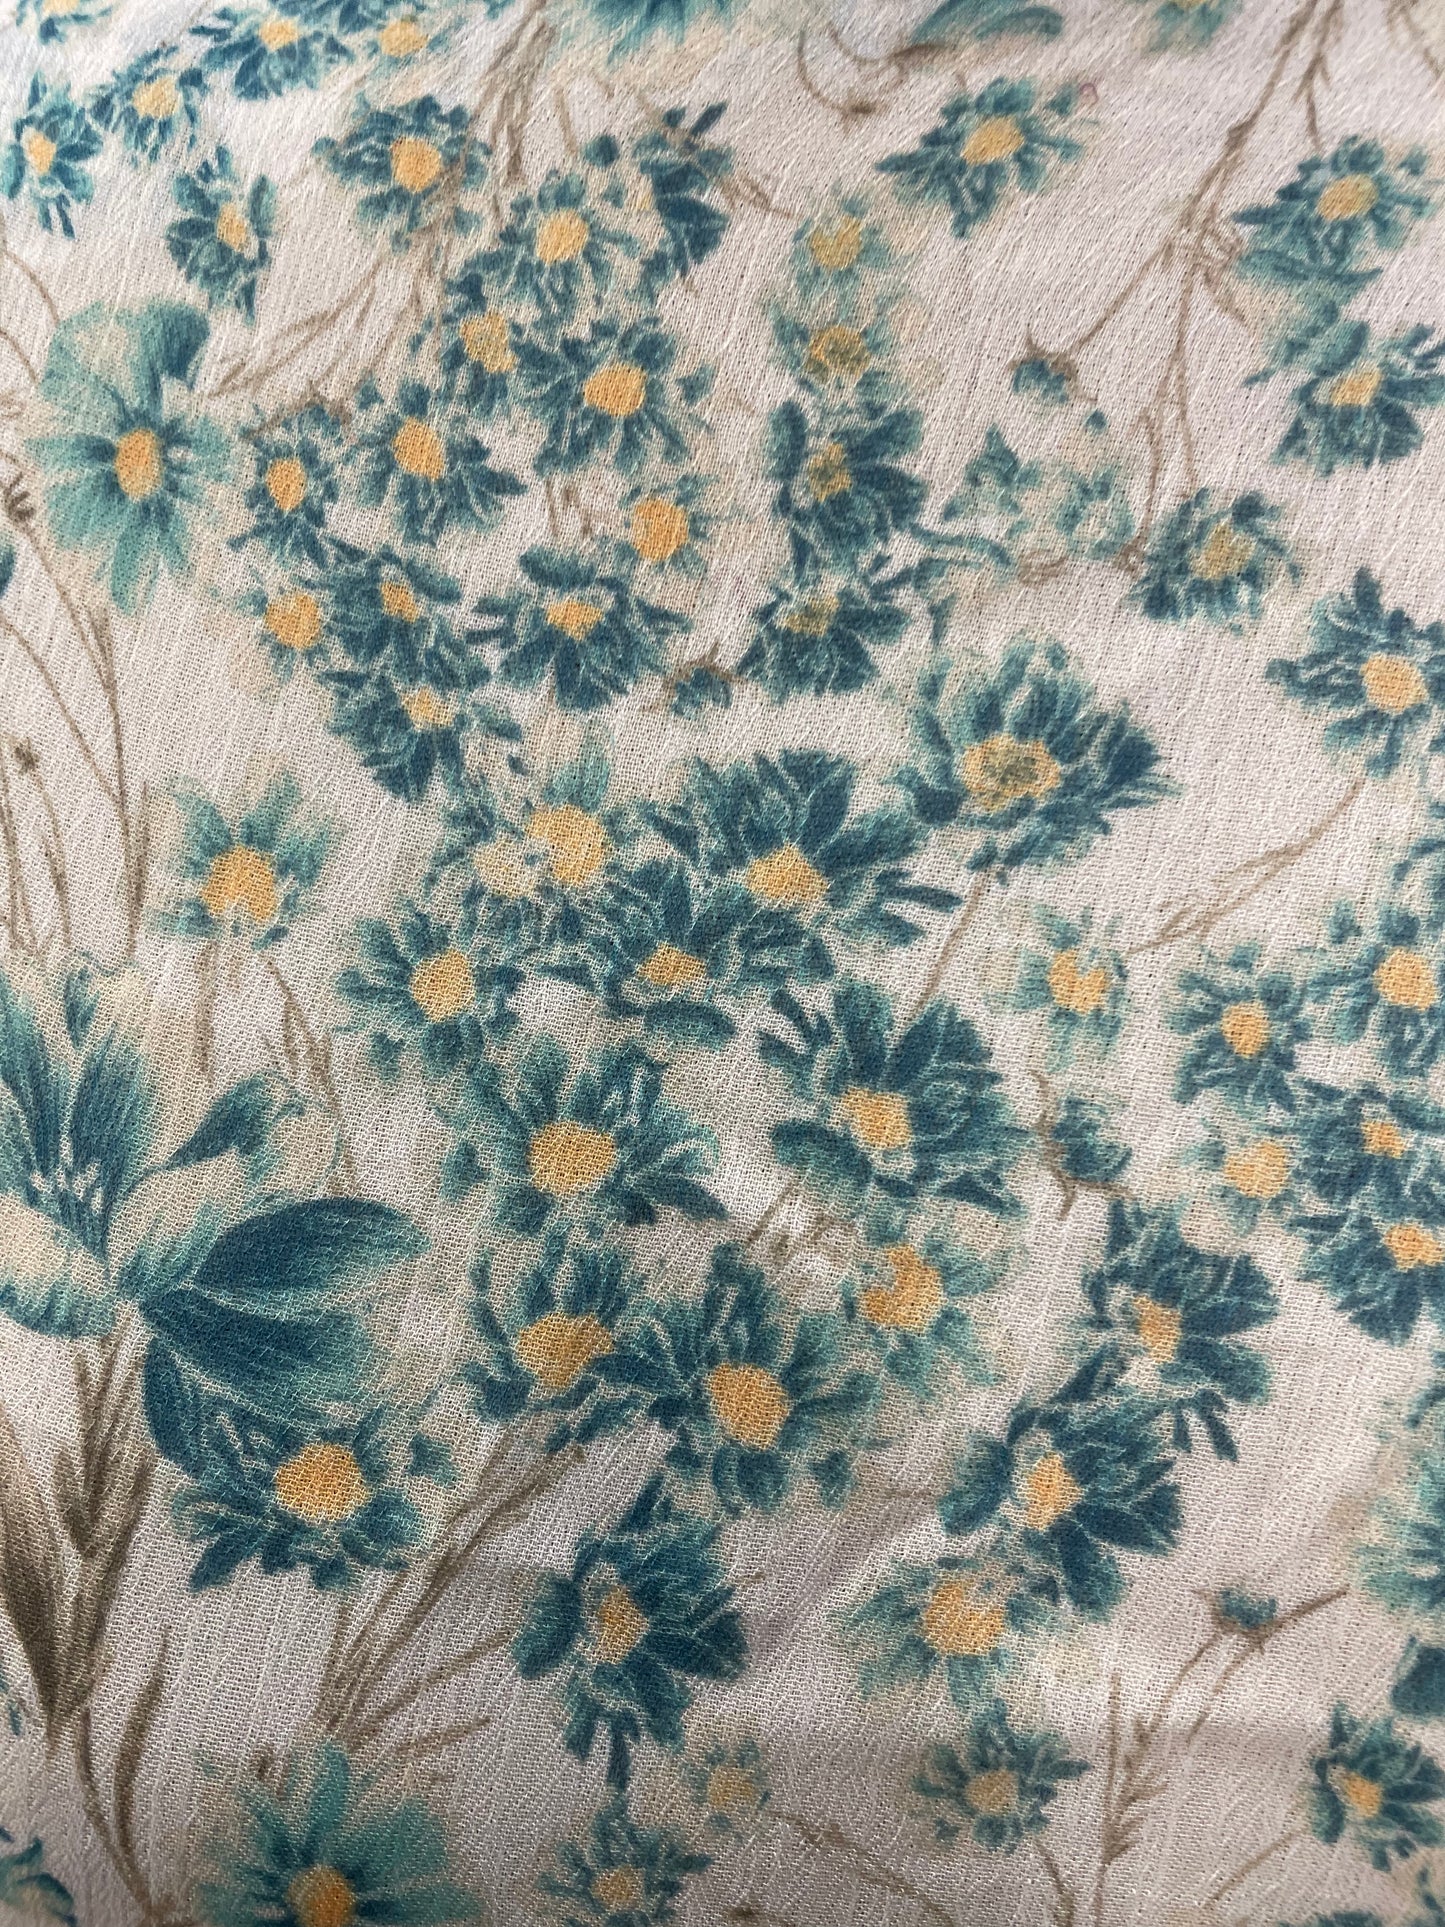 Floral Poly Chiffon - Blue, White, Yellow